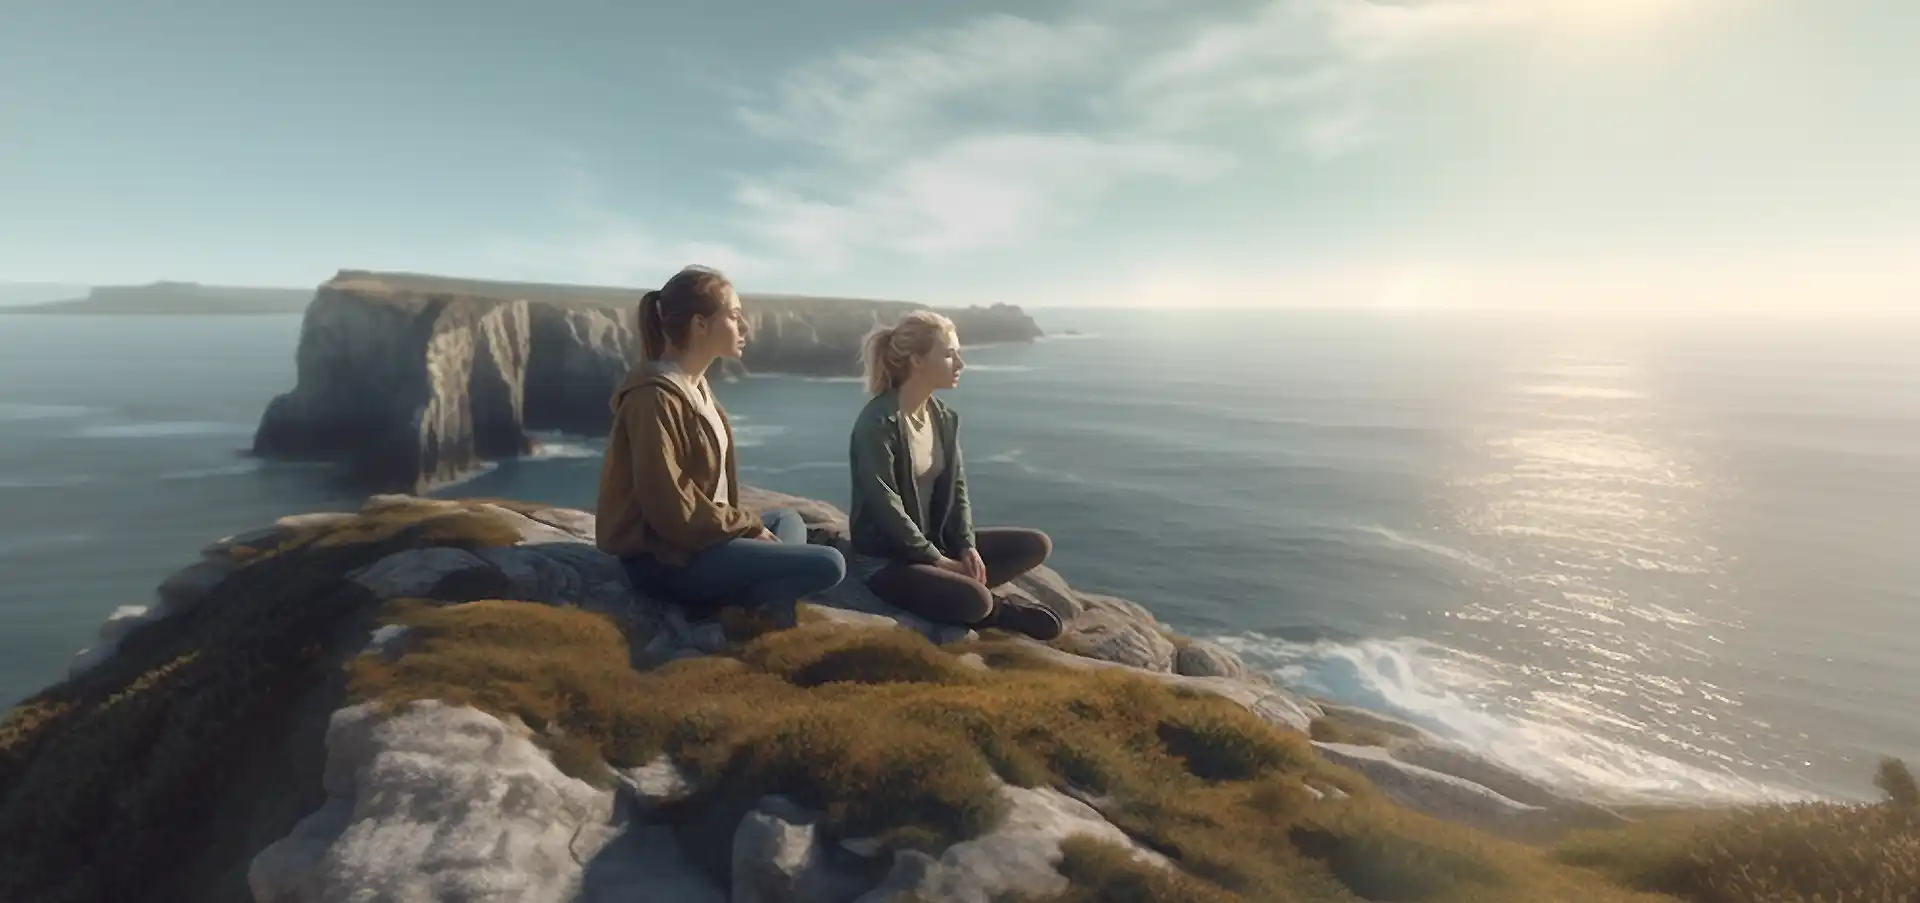 Zwei junge Frauen meditierend und spirituell auf den Klippen von Portugal, weiter Blick auf das Meer, blaugrauer Himmel